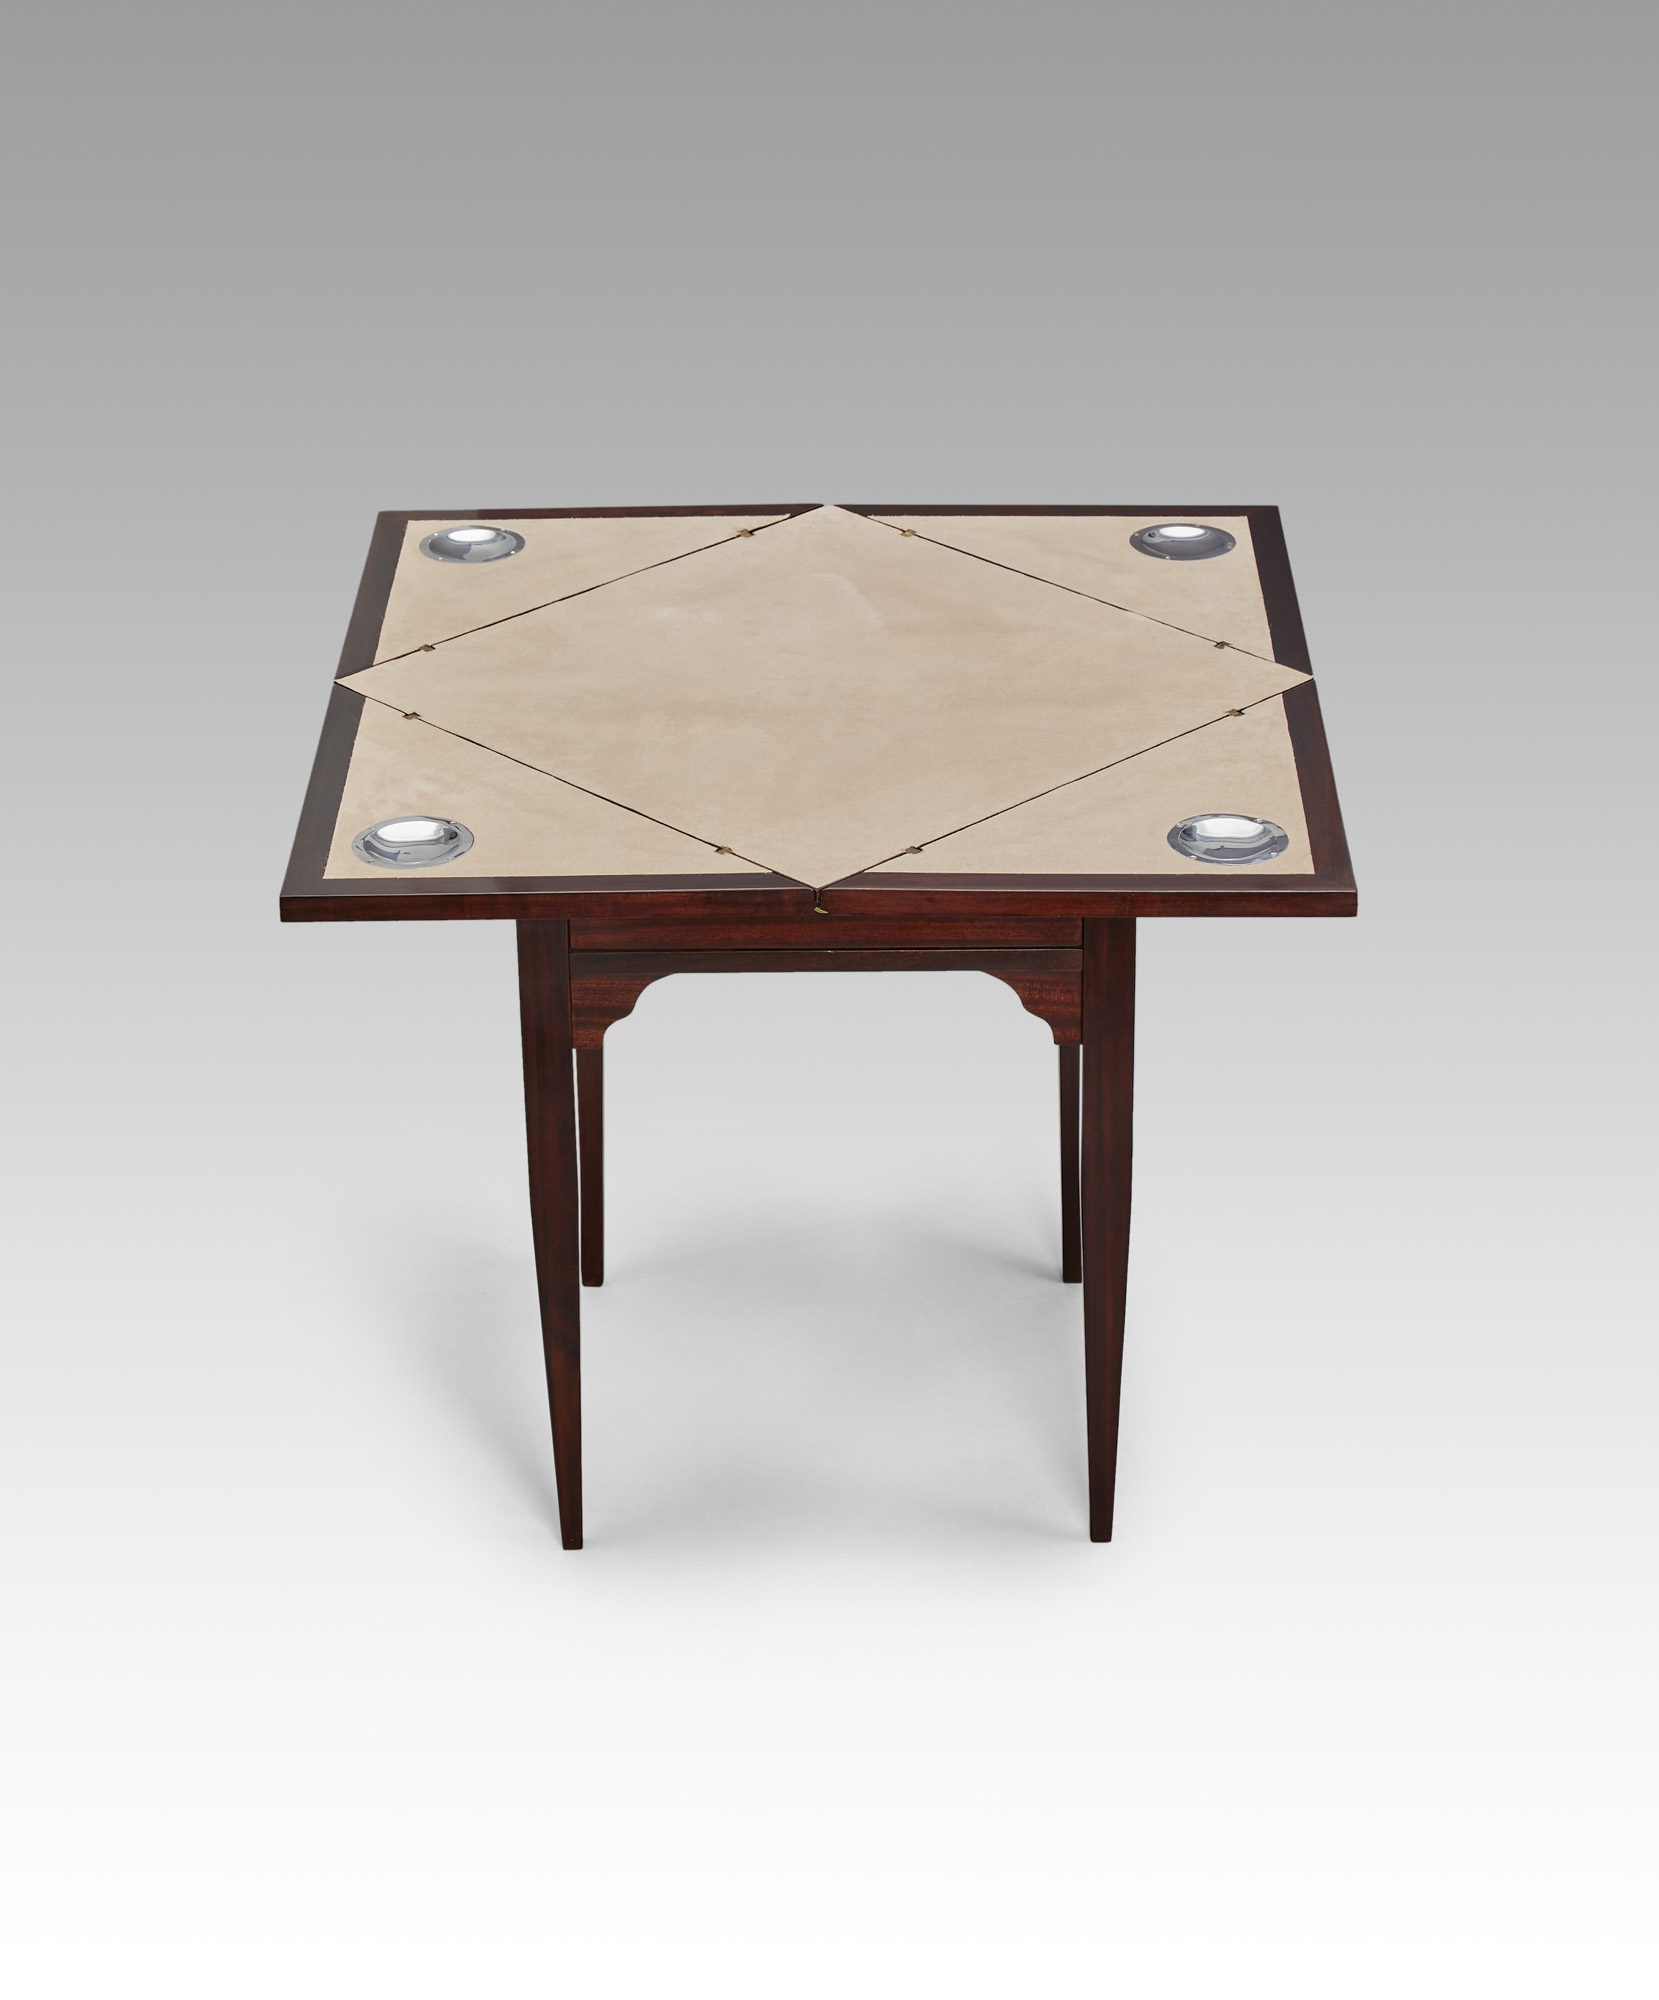 Spieltisch klappbar 1900 1